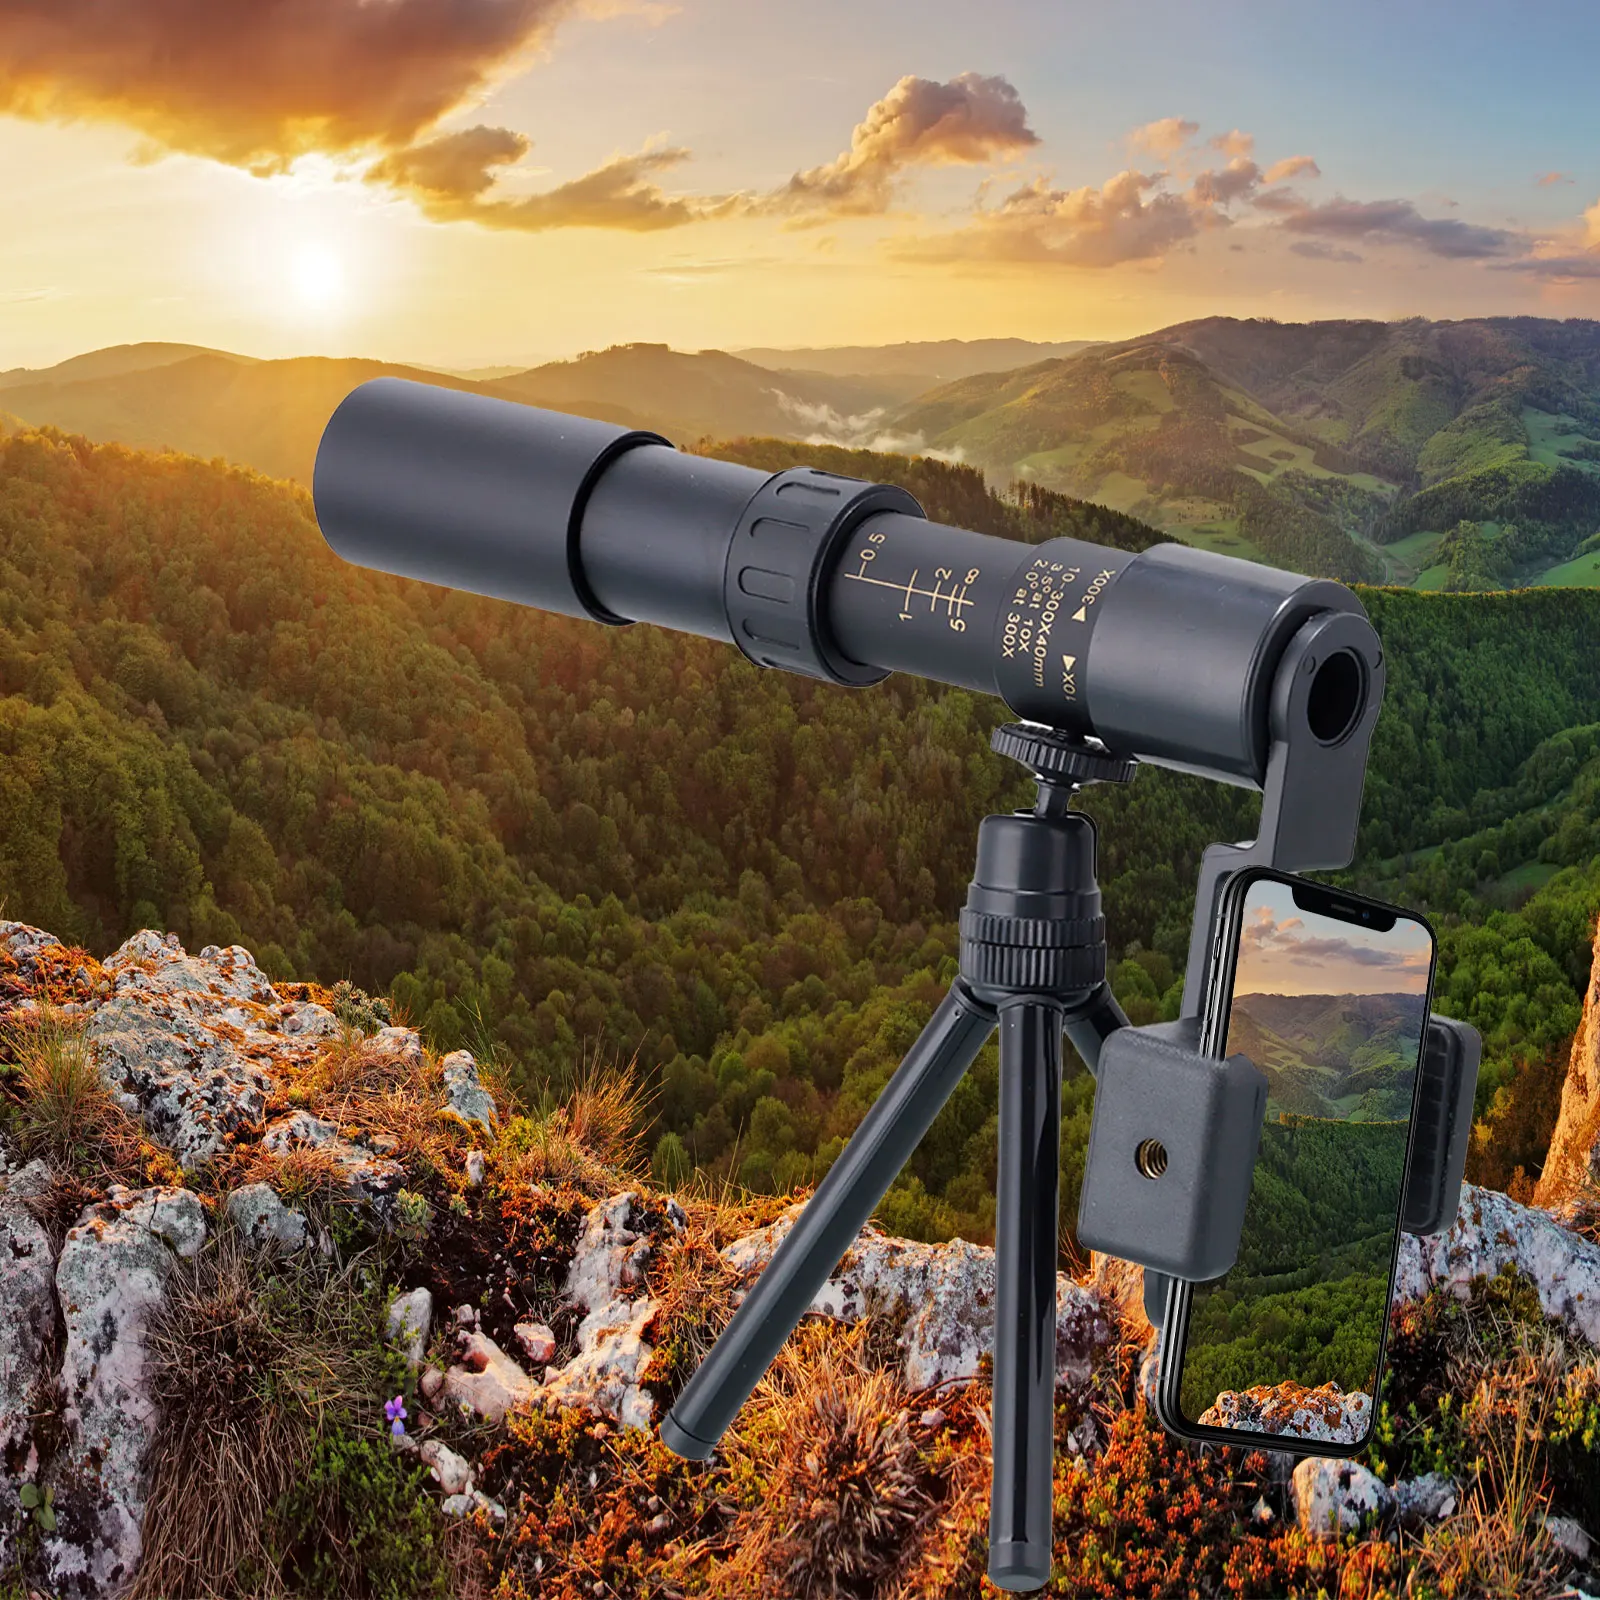 Teropong Kuat Monokuler 300X40 Teleskop Jarak Jauh Profesional untuk Perjalanan Berburu Berkemah dengan Tampilan Definisi Tinggi